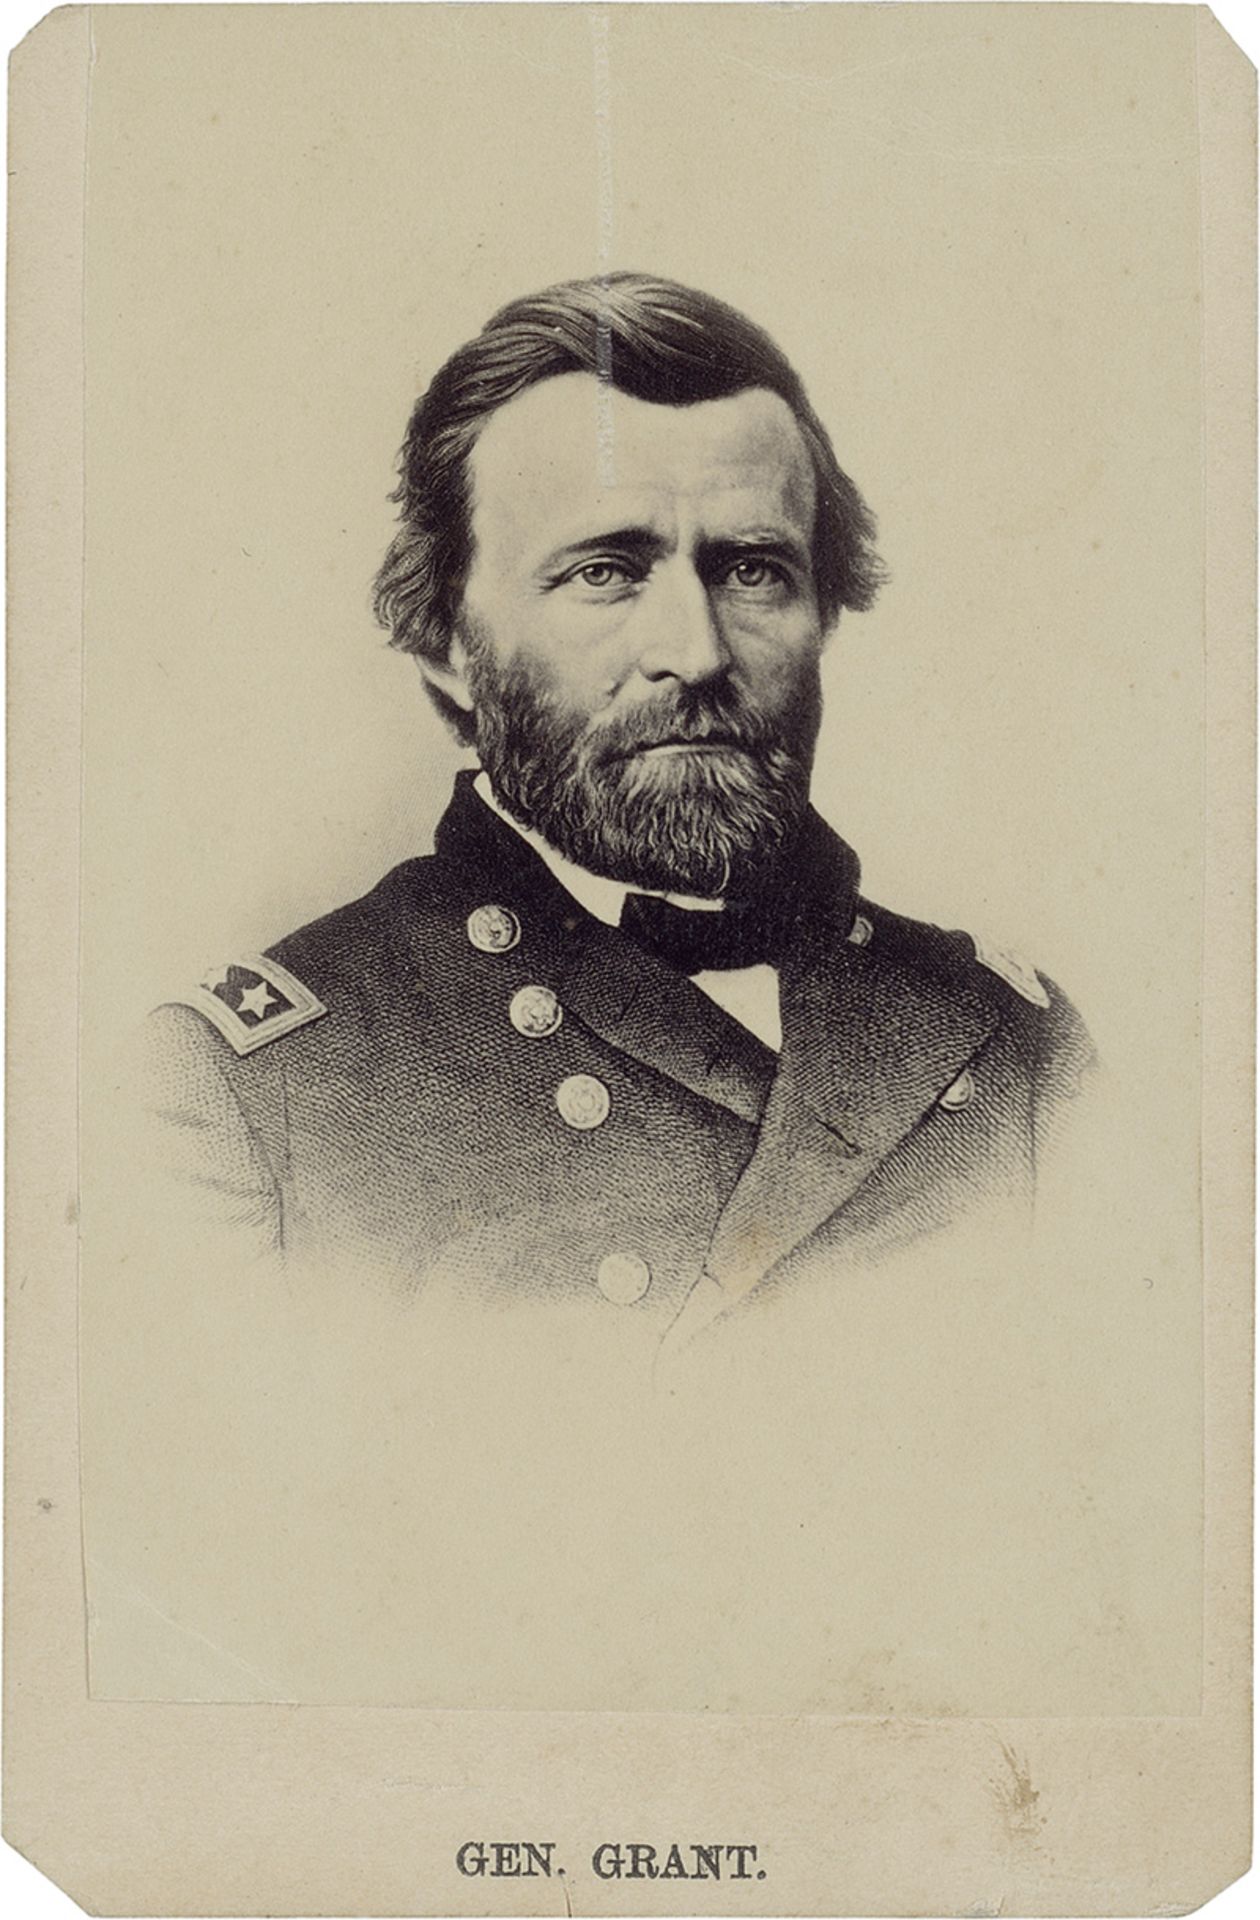 American Civil War: Selection of Civil War images